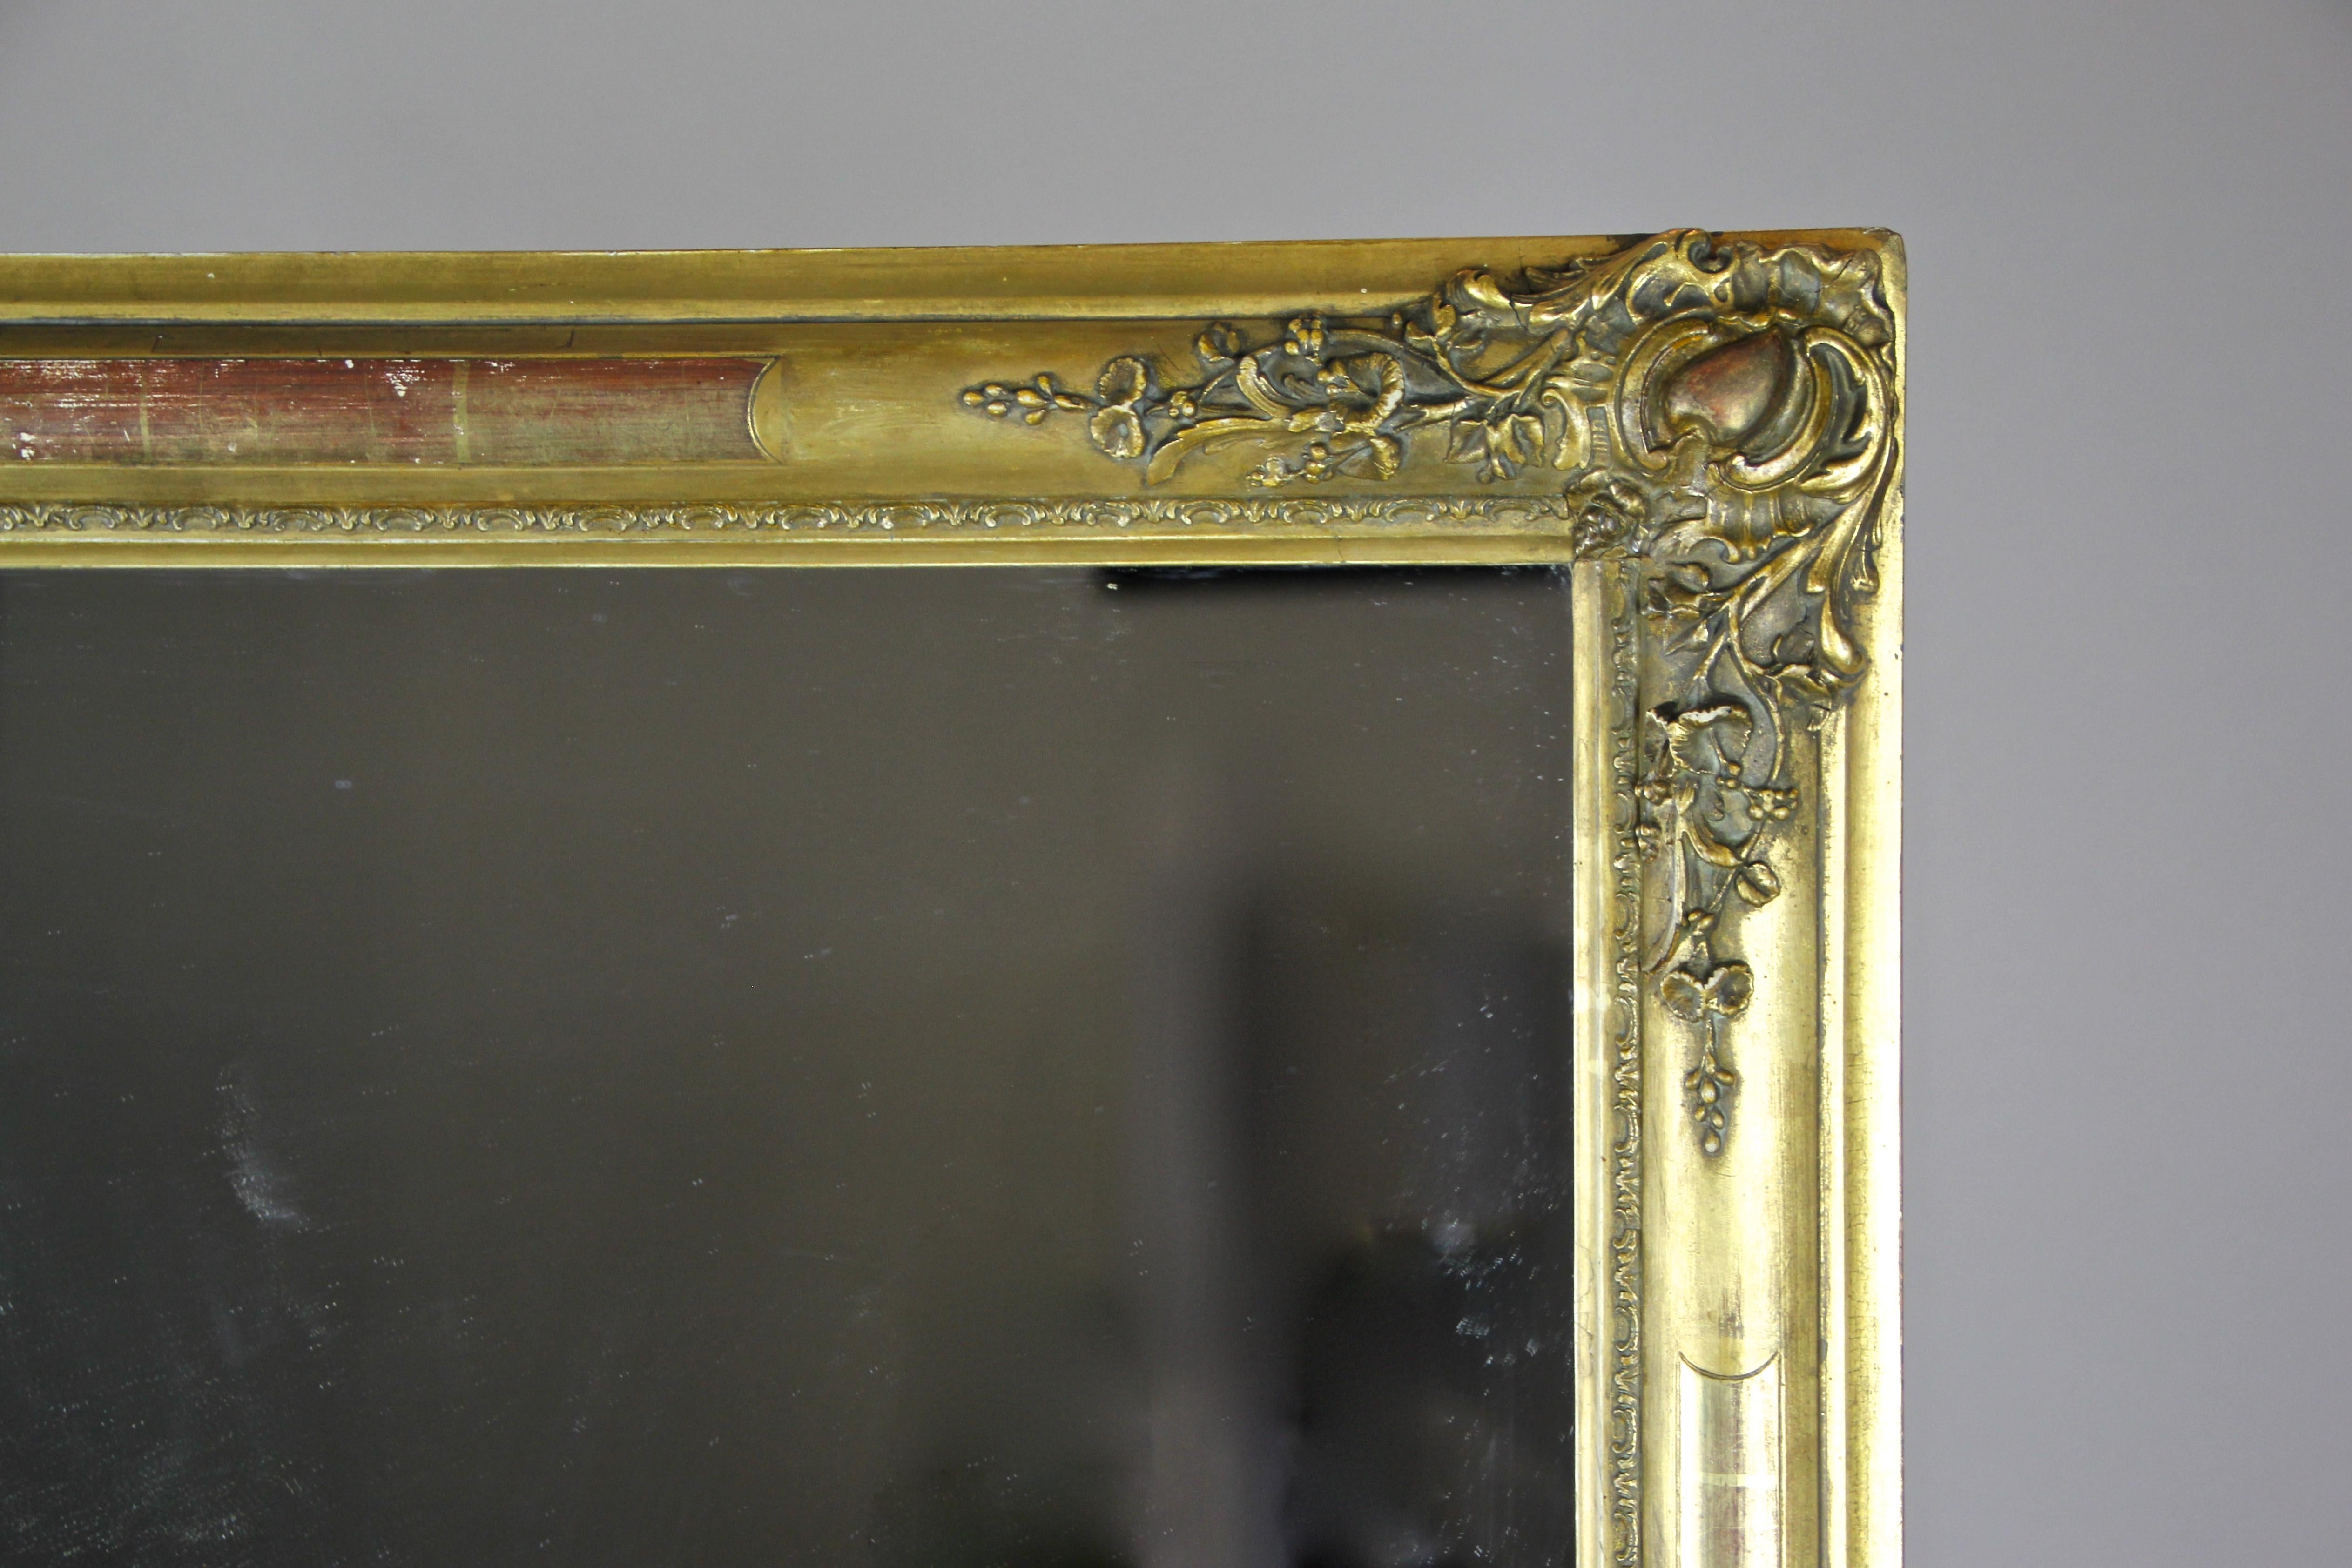 Vergoldeter Biedermeier-Spiegel, Frankreich um 1820 (19. Jahrhundert)